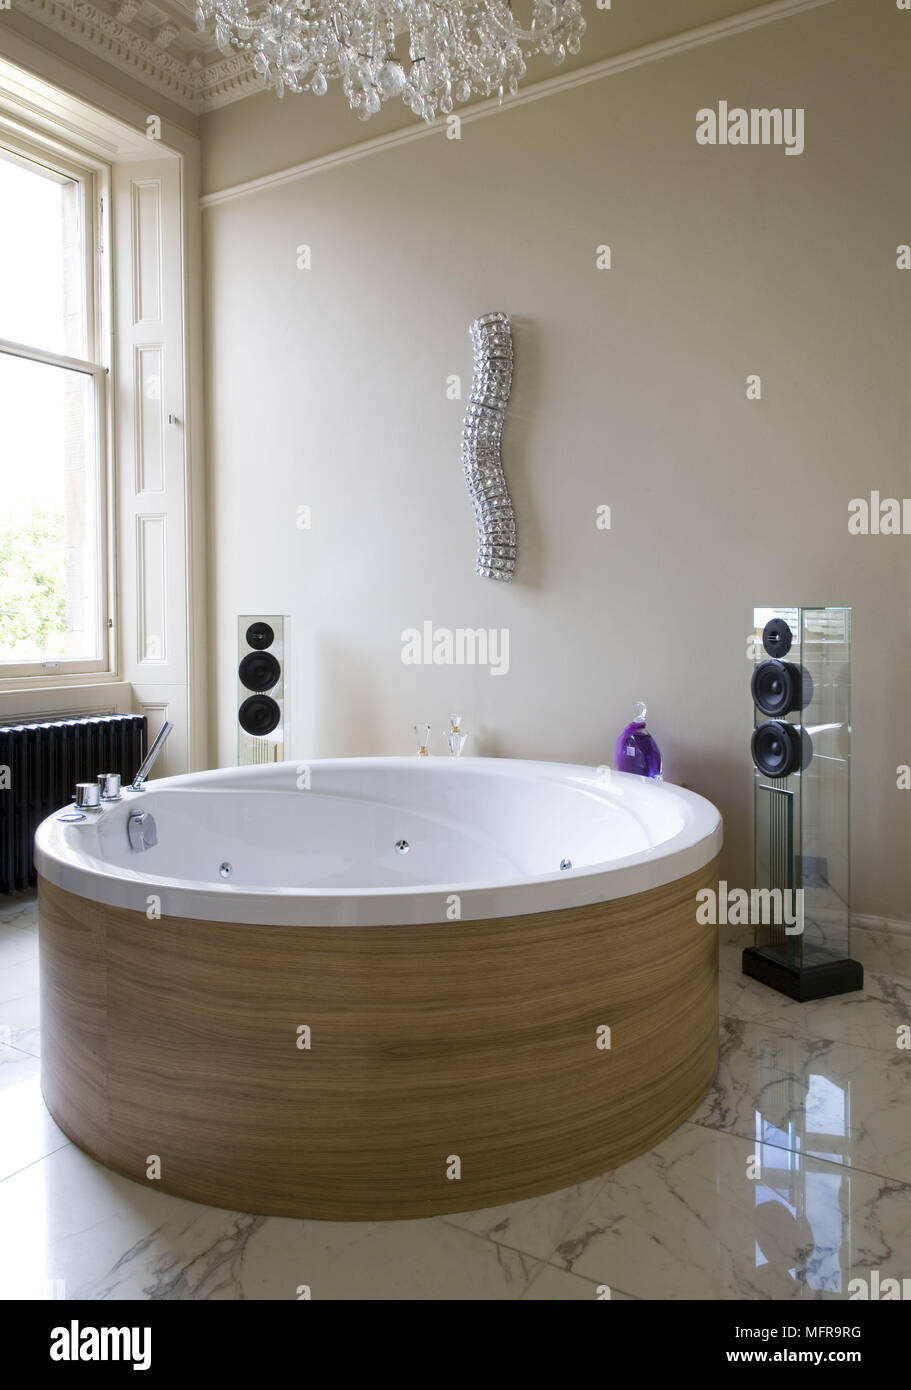 Hi-fi-Lautsprecher neben zeitgenössischen runde Badewanne im Bad  Stockfotografie - Alamy